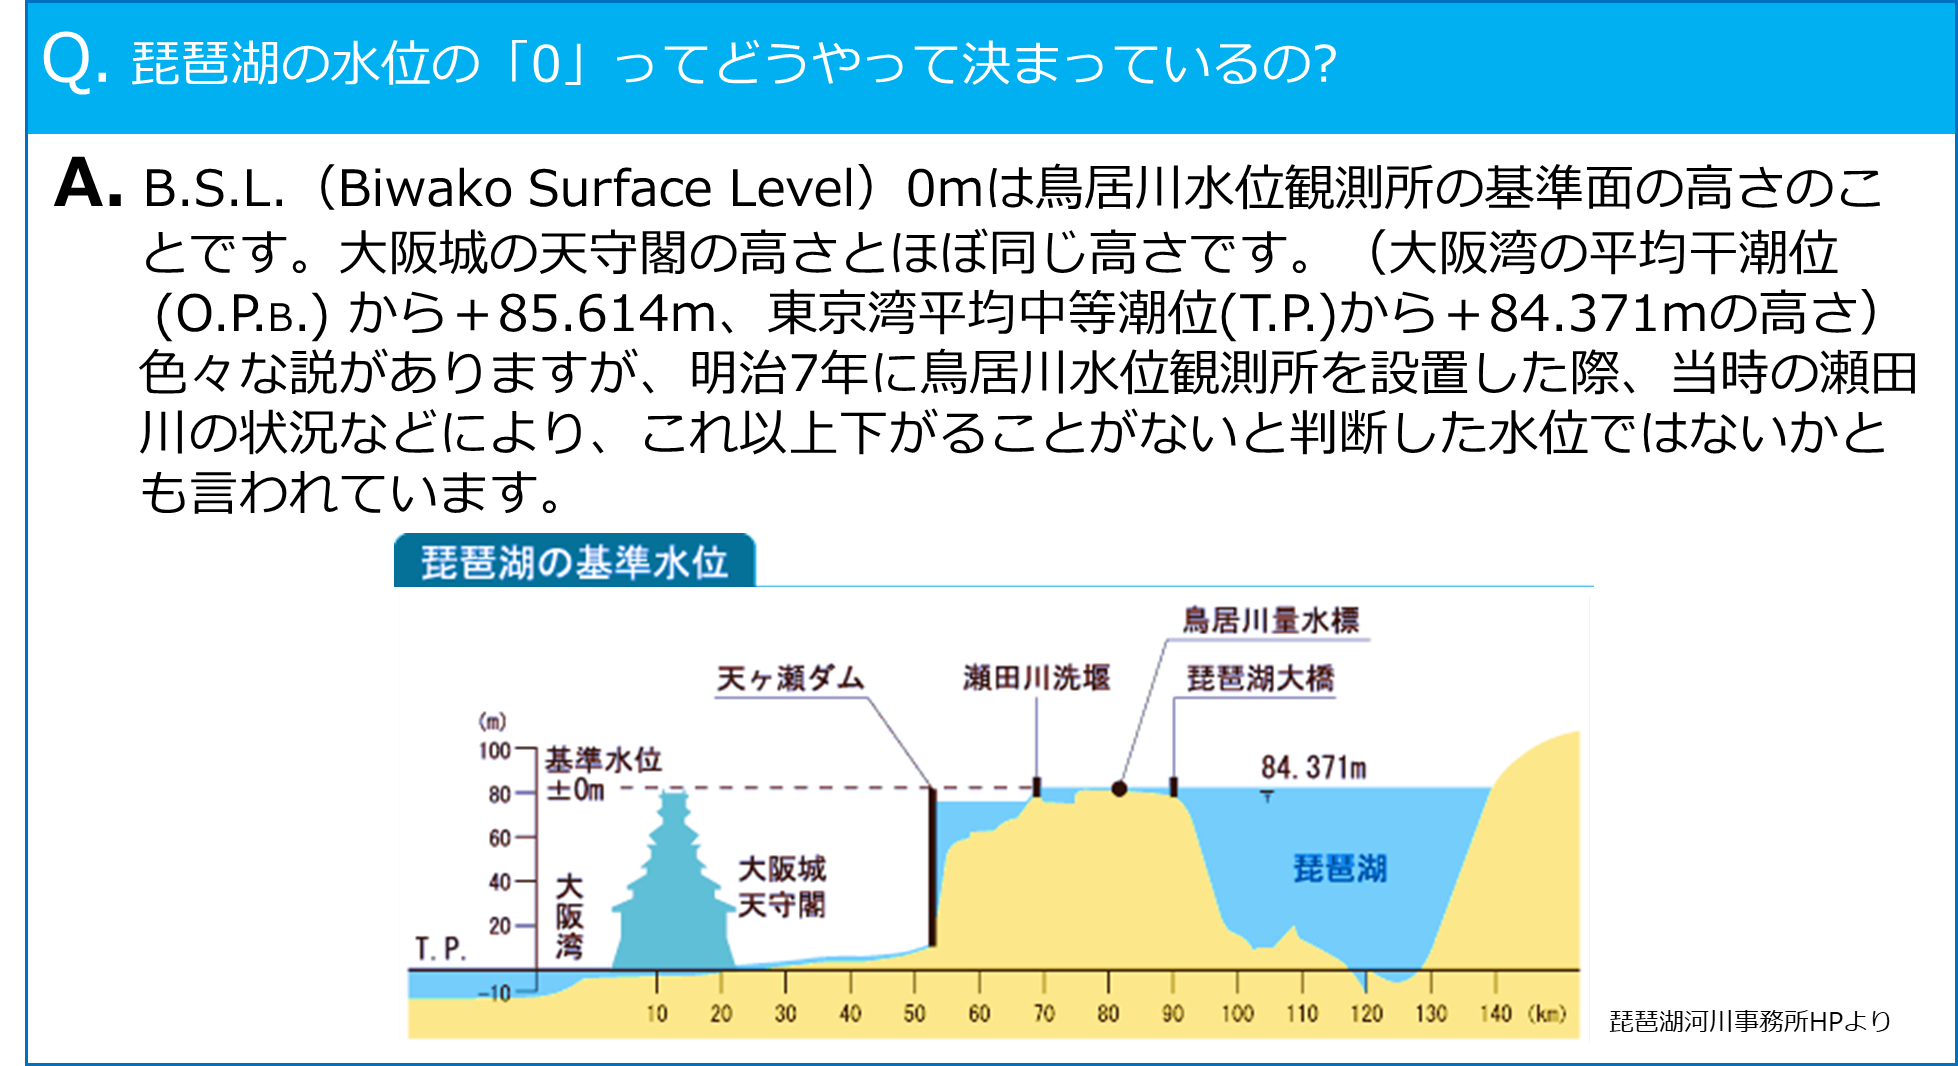 Q. 琵琶湖の水位の「0」ってどうやって決まっているの?
A. B.S.L.（Biwako Surface Level）0mは鳥居川水位観測所の基準面の高さのことです。大阪城の天守閣の高さとほぼ同じ高さです。（大阪湾の平均干潮位(O.P.B)から＋85.614m、東京湾平均中等潮位(T.P.)から＋84.371mの高さ）色々な説がありますが、明治7年に鳥居川水位観測所を設置した際、当時の瀬田川の状況などにより、これ以上下がることがないと判断した水位ではないかとも言われています。